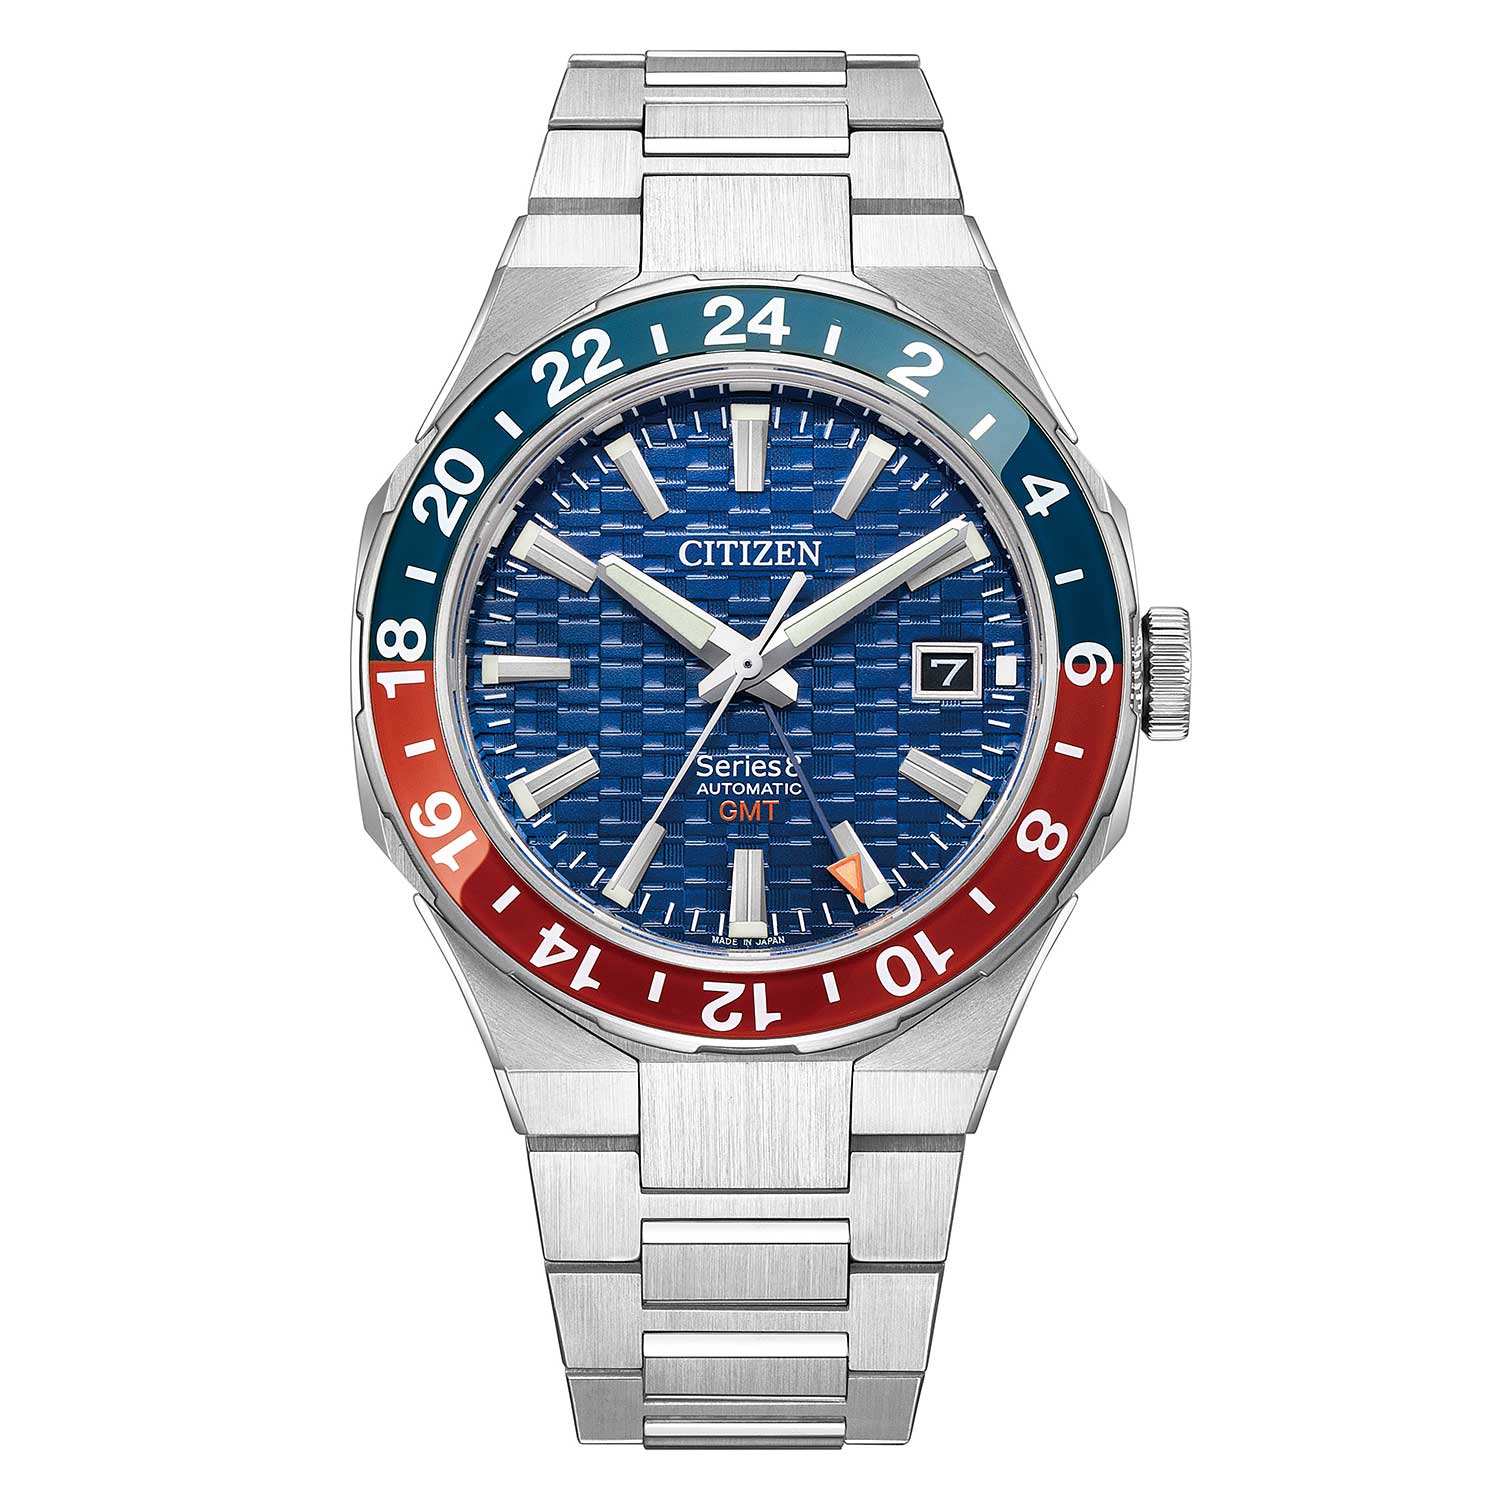 Đồng hồ Citizen Series 8880 Mechanical GMT 